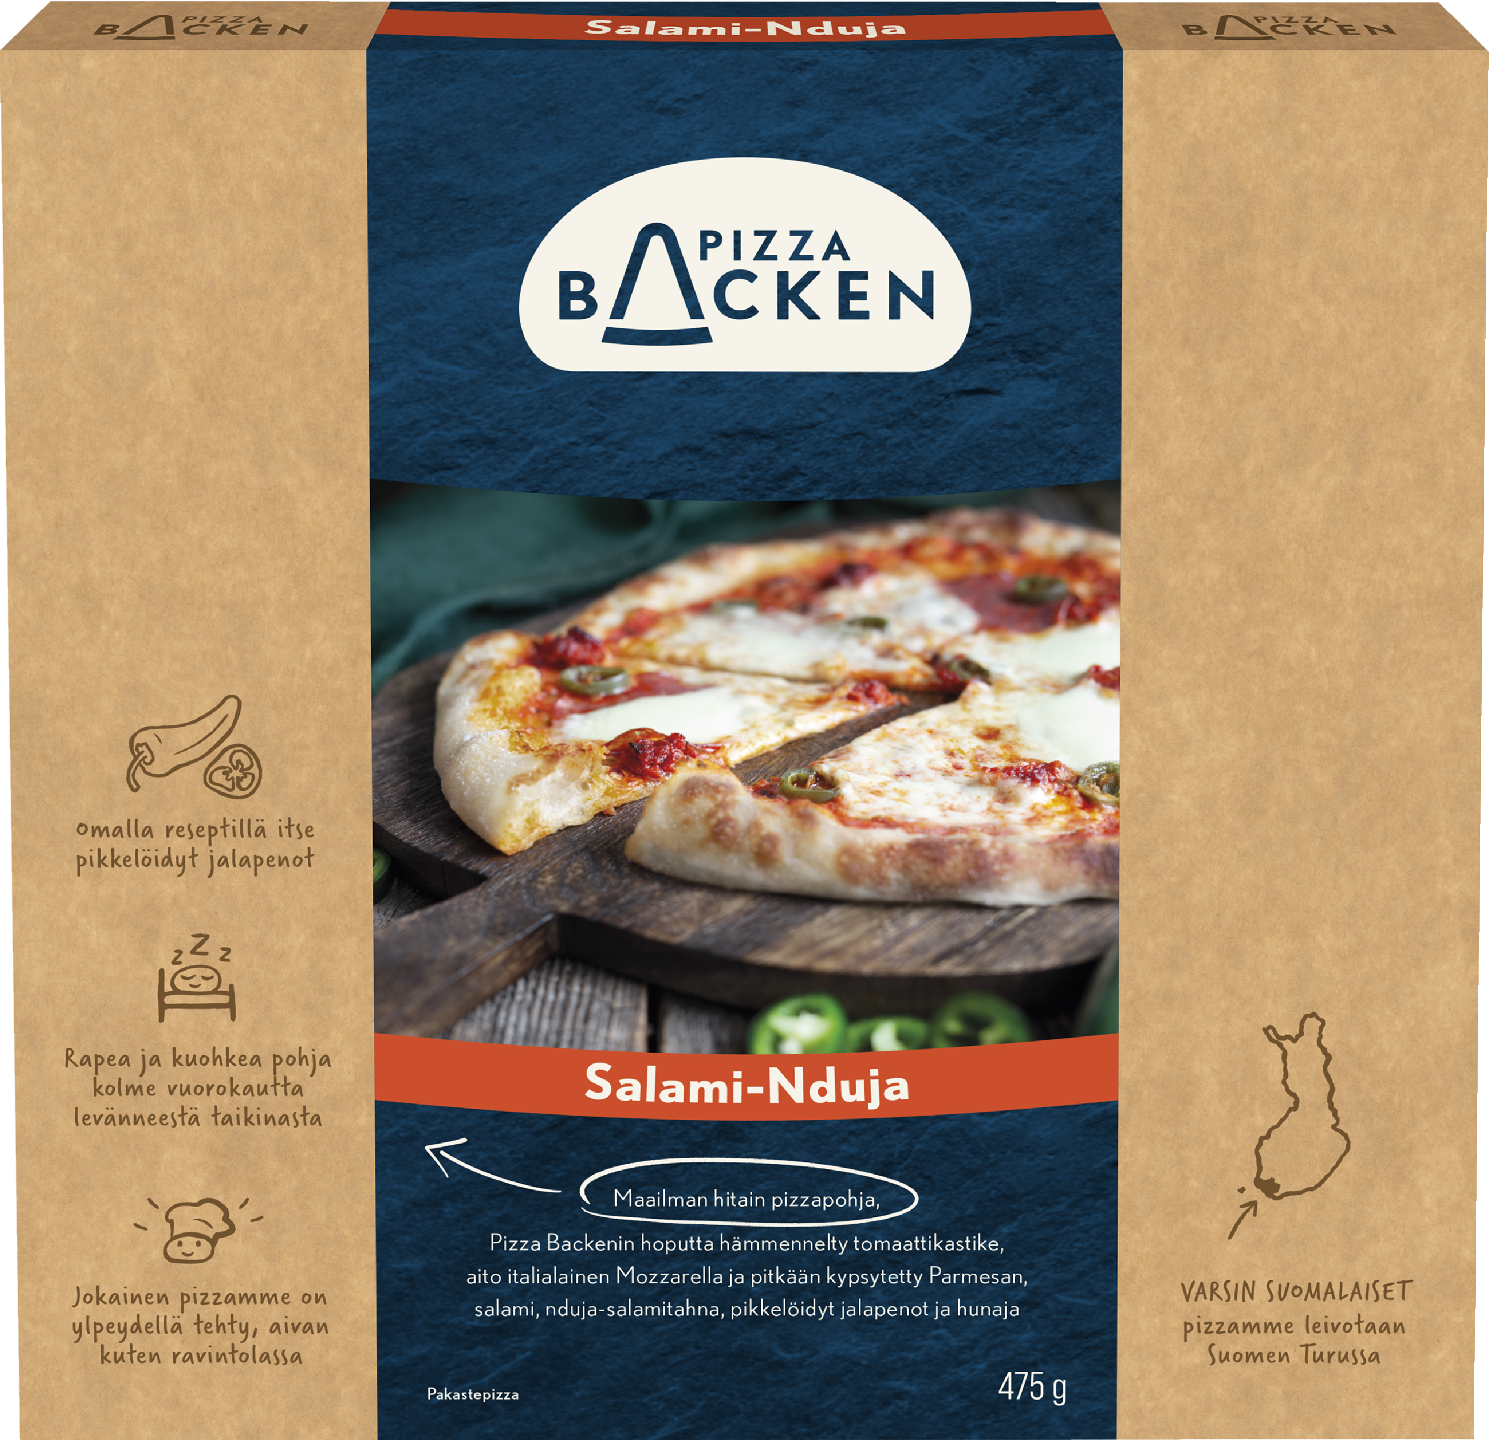 Pizza Backen Salami-Ndujapizza 475g pakaste